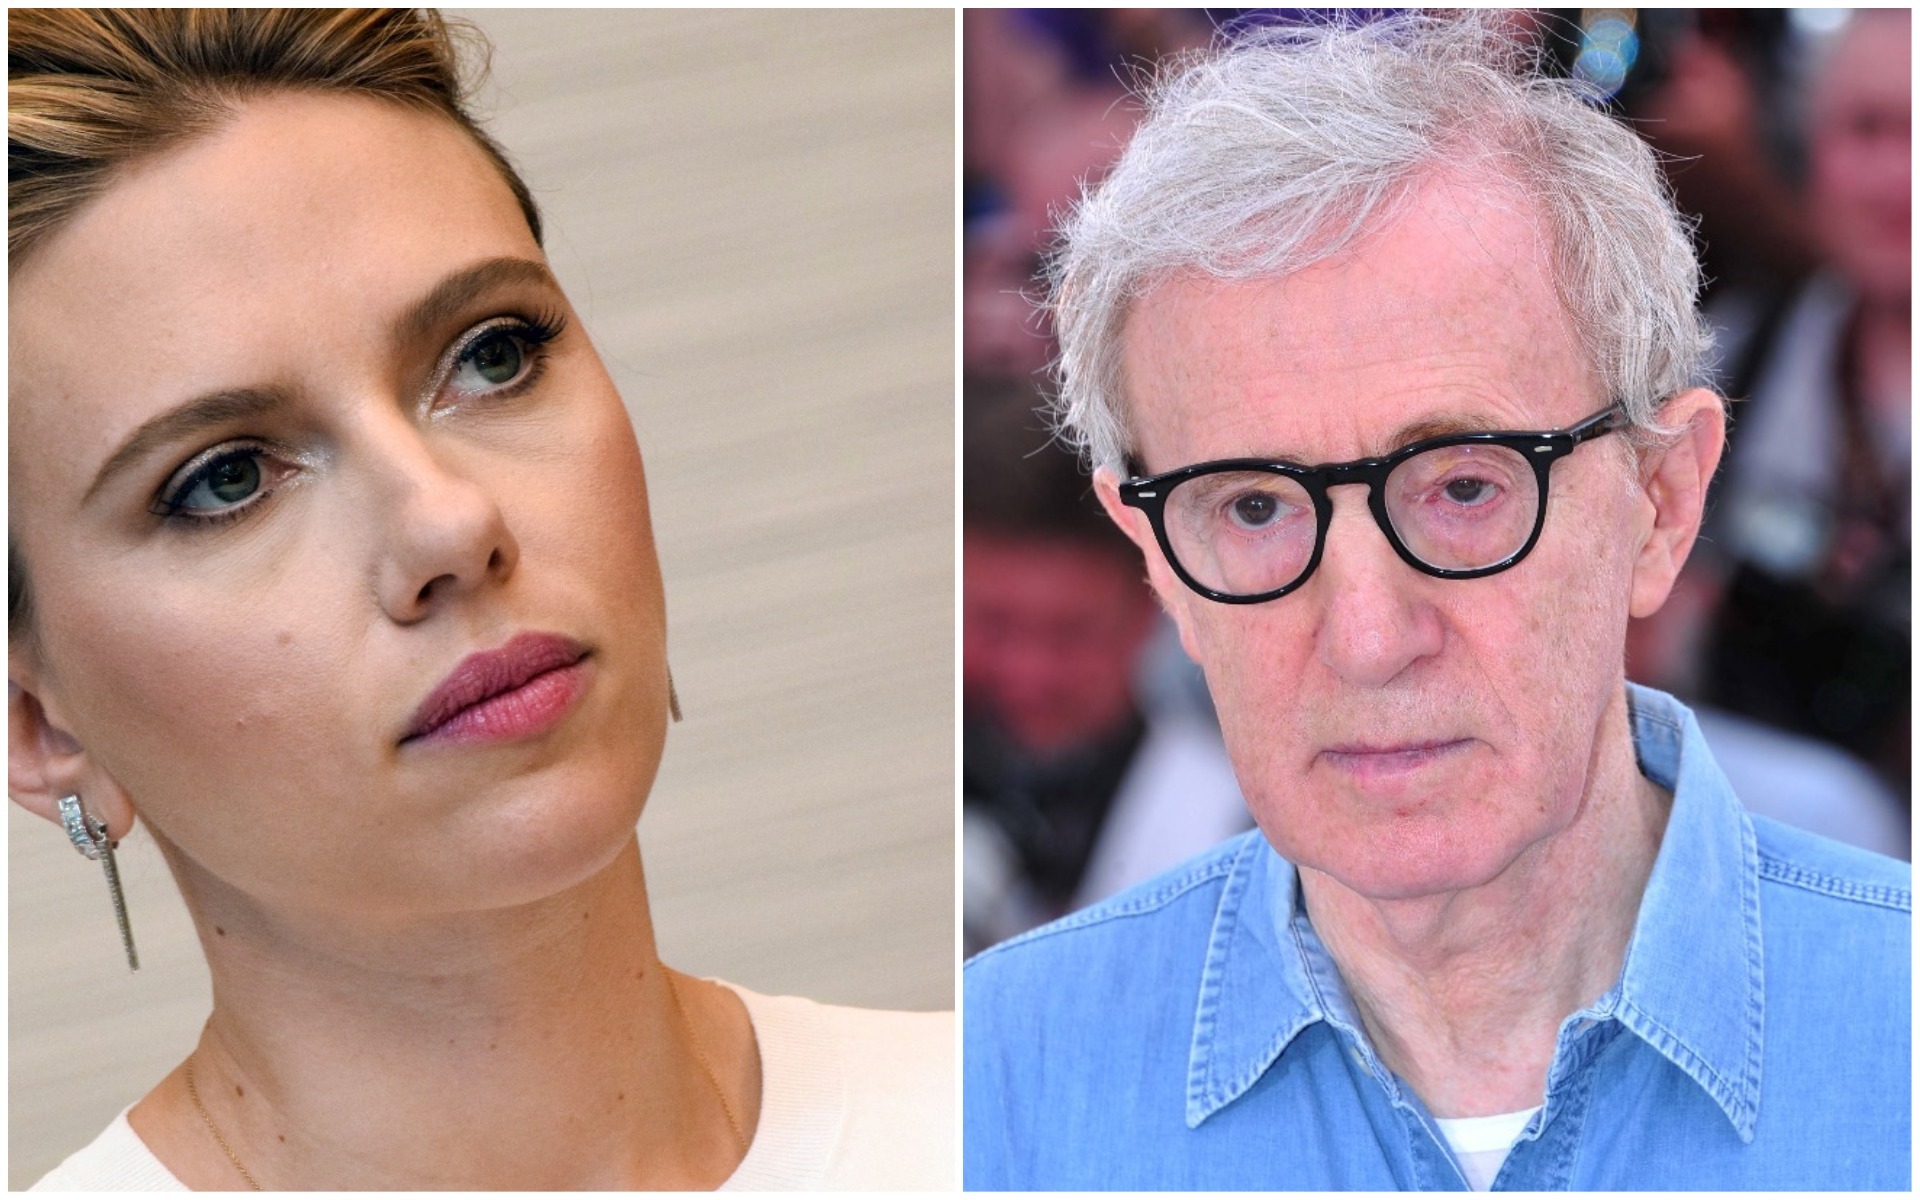 "J'aime Woody" : Scarlett Johansson croit toujours en l'innocence du cinéaste 